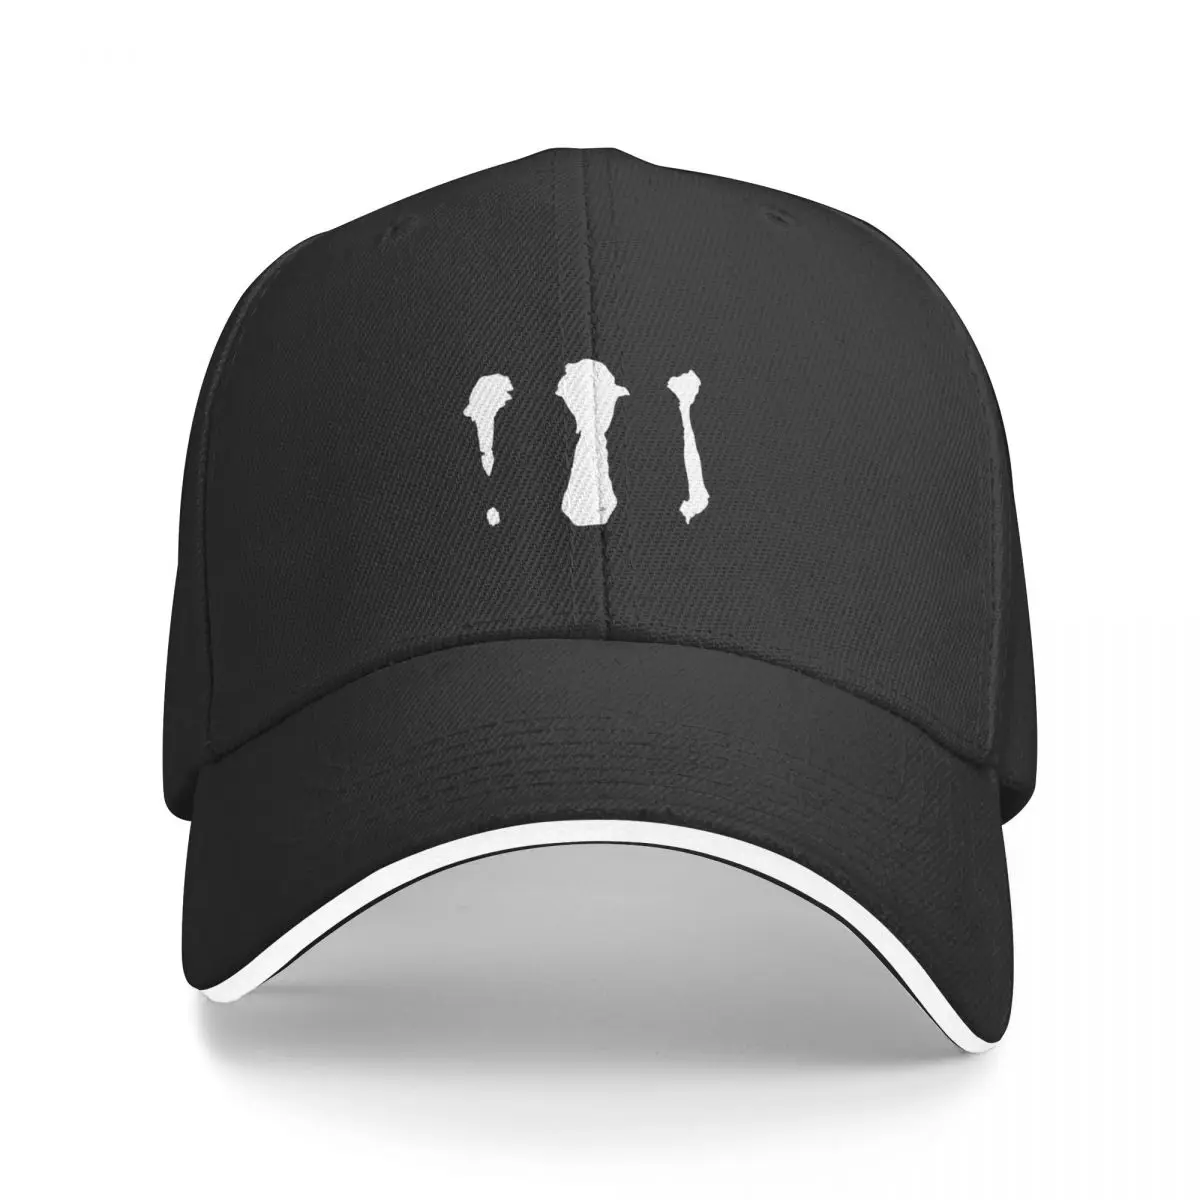 

Новый заказ на заказ для кепки на заказ Роскошная брендовая солнцезащитная Кепка для детей новая в кепке кепки Мужские Женские